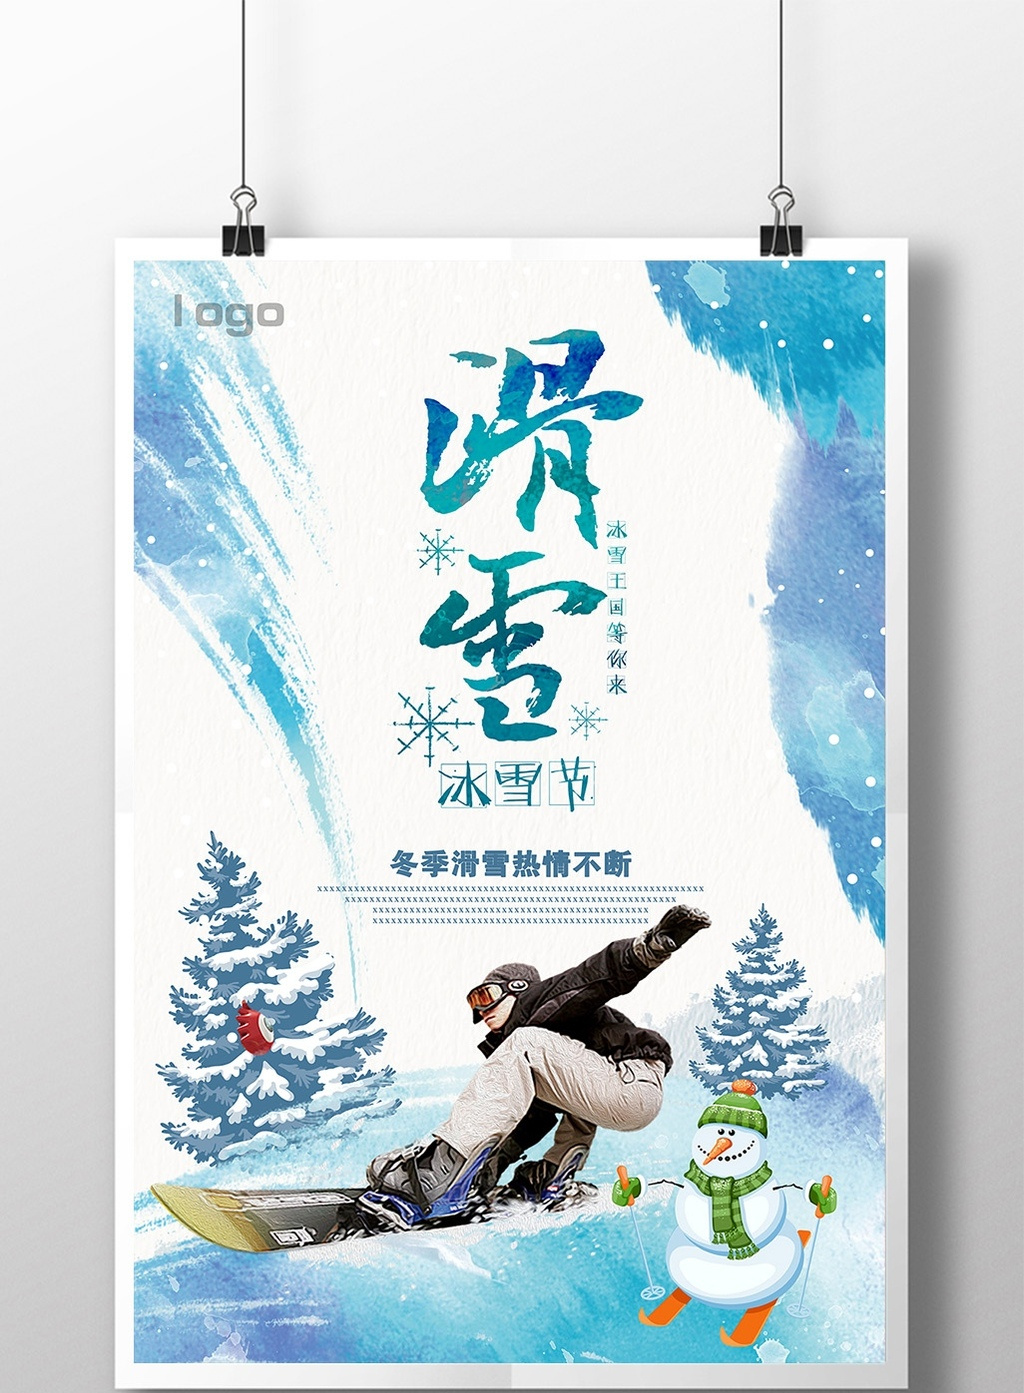 好看的激情滑雪冰雪节狂欢海报素材免费下载,本次作品主题是广告设计图片